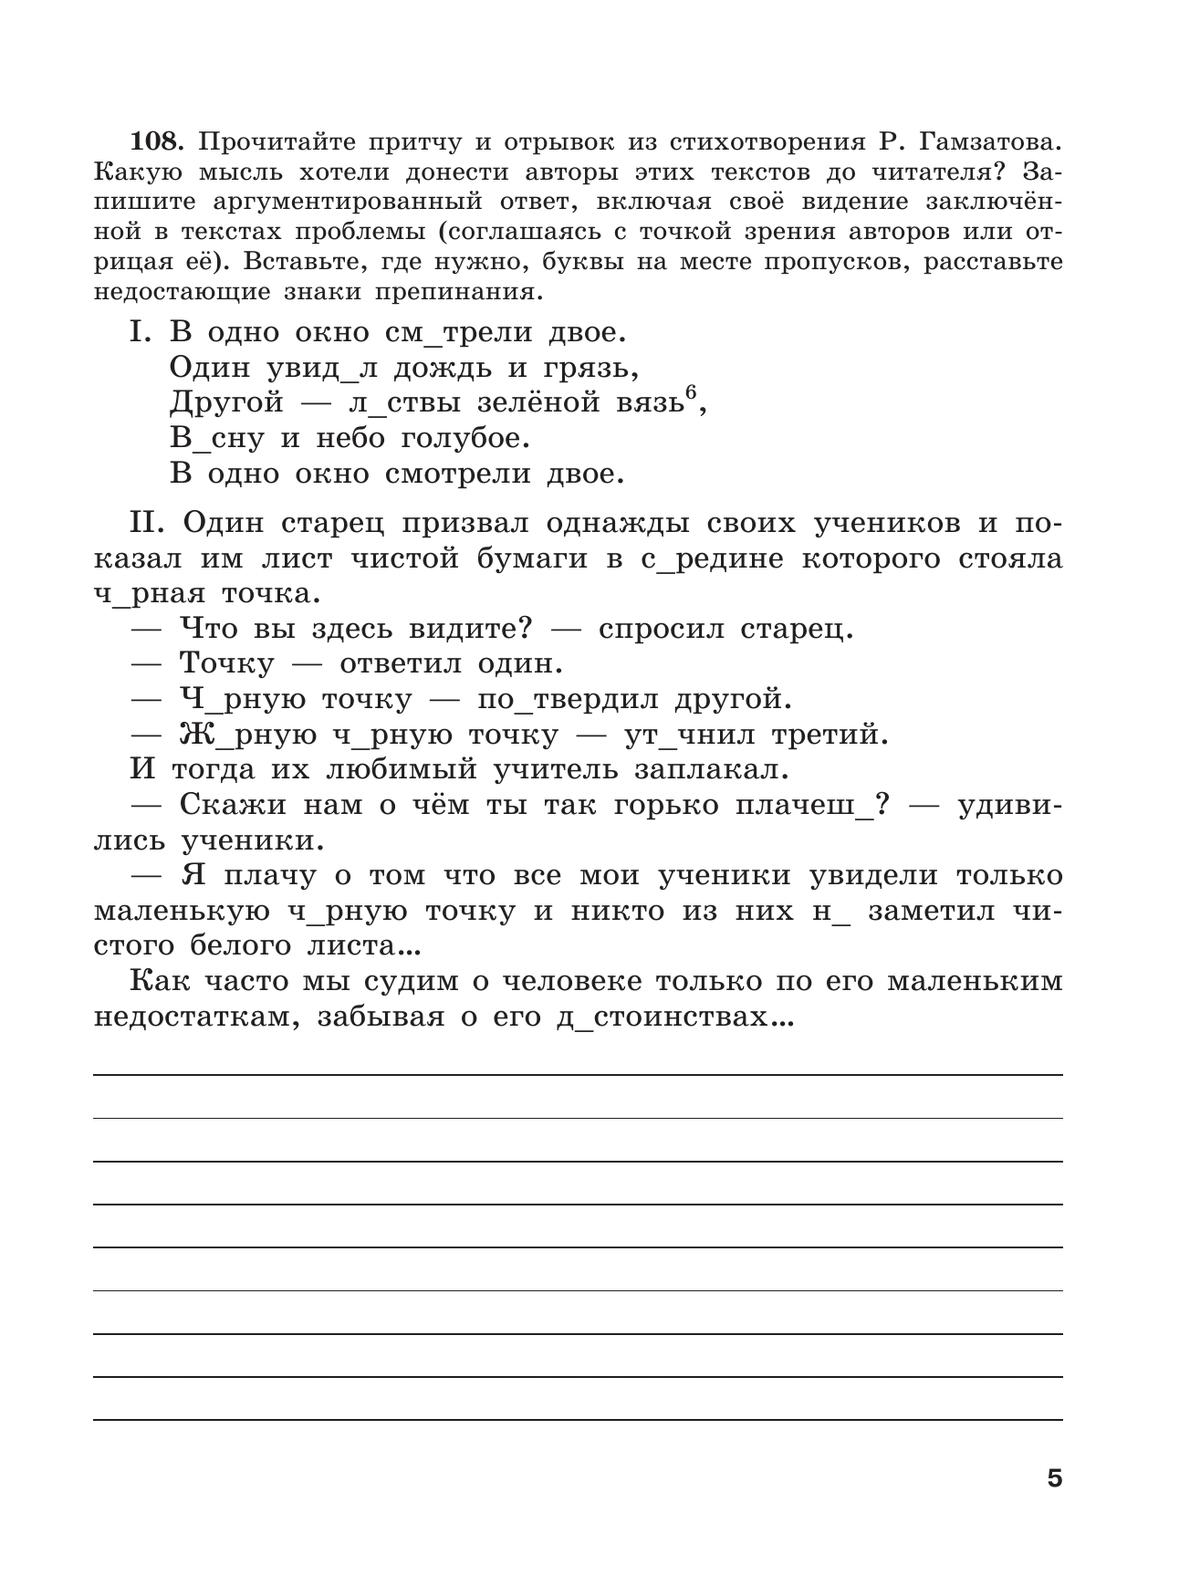 Скорая помощь по русскому языку. Рабочая тетрадь. 9 класс. В 2 ч. Часть 2 7